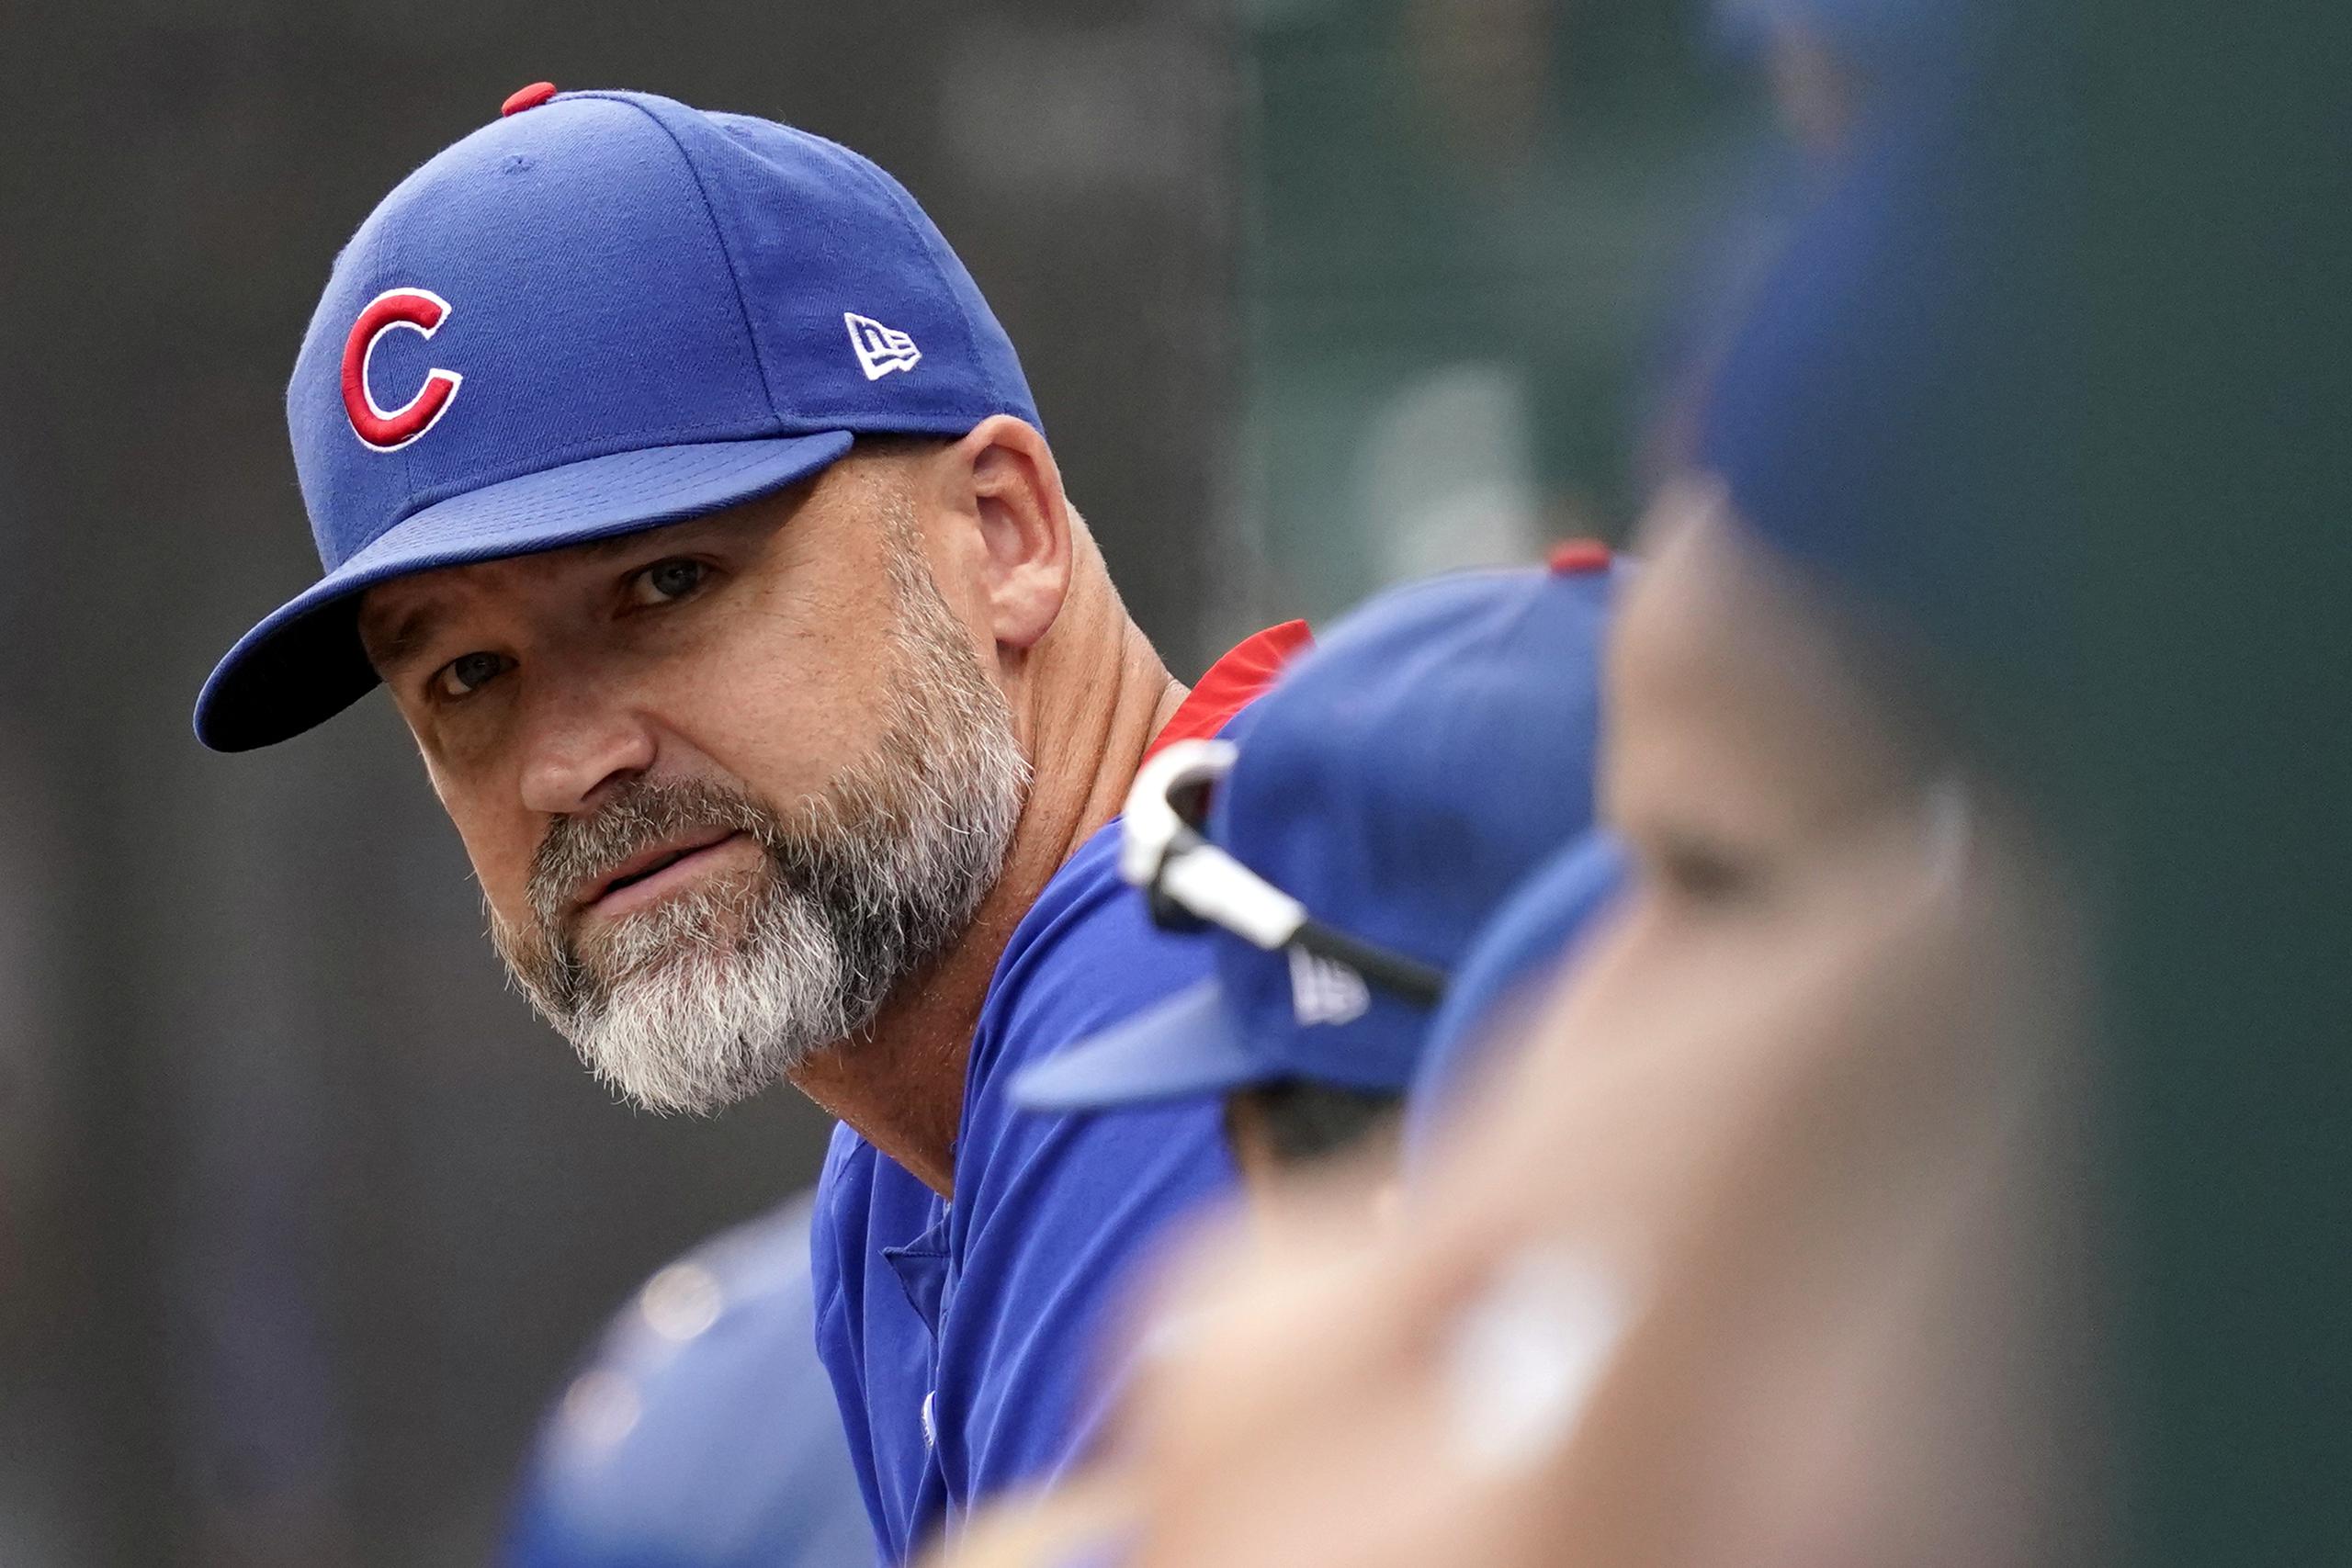 El dirigente de los Cubs de Chicago, David Ross, estará fuera por 10 días luego de arrojar positivo a COVID.